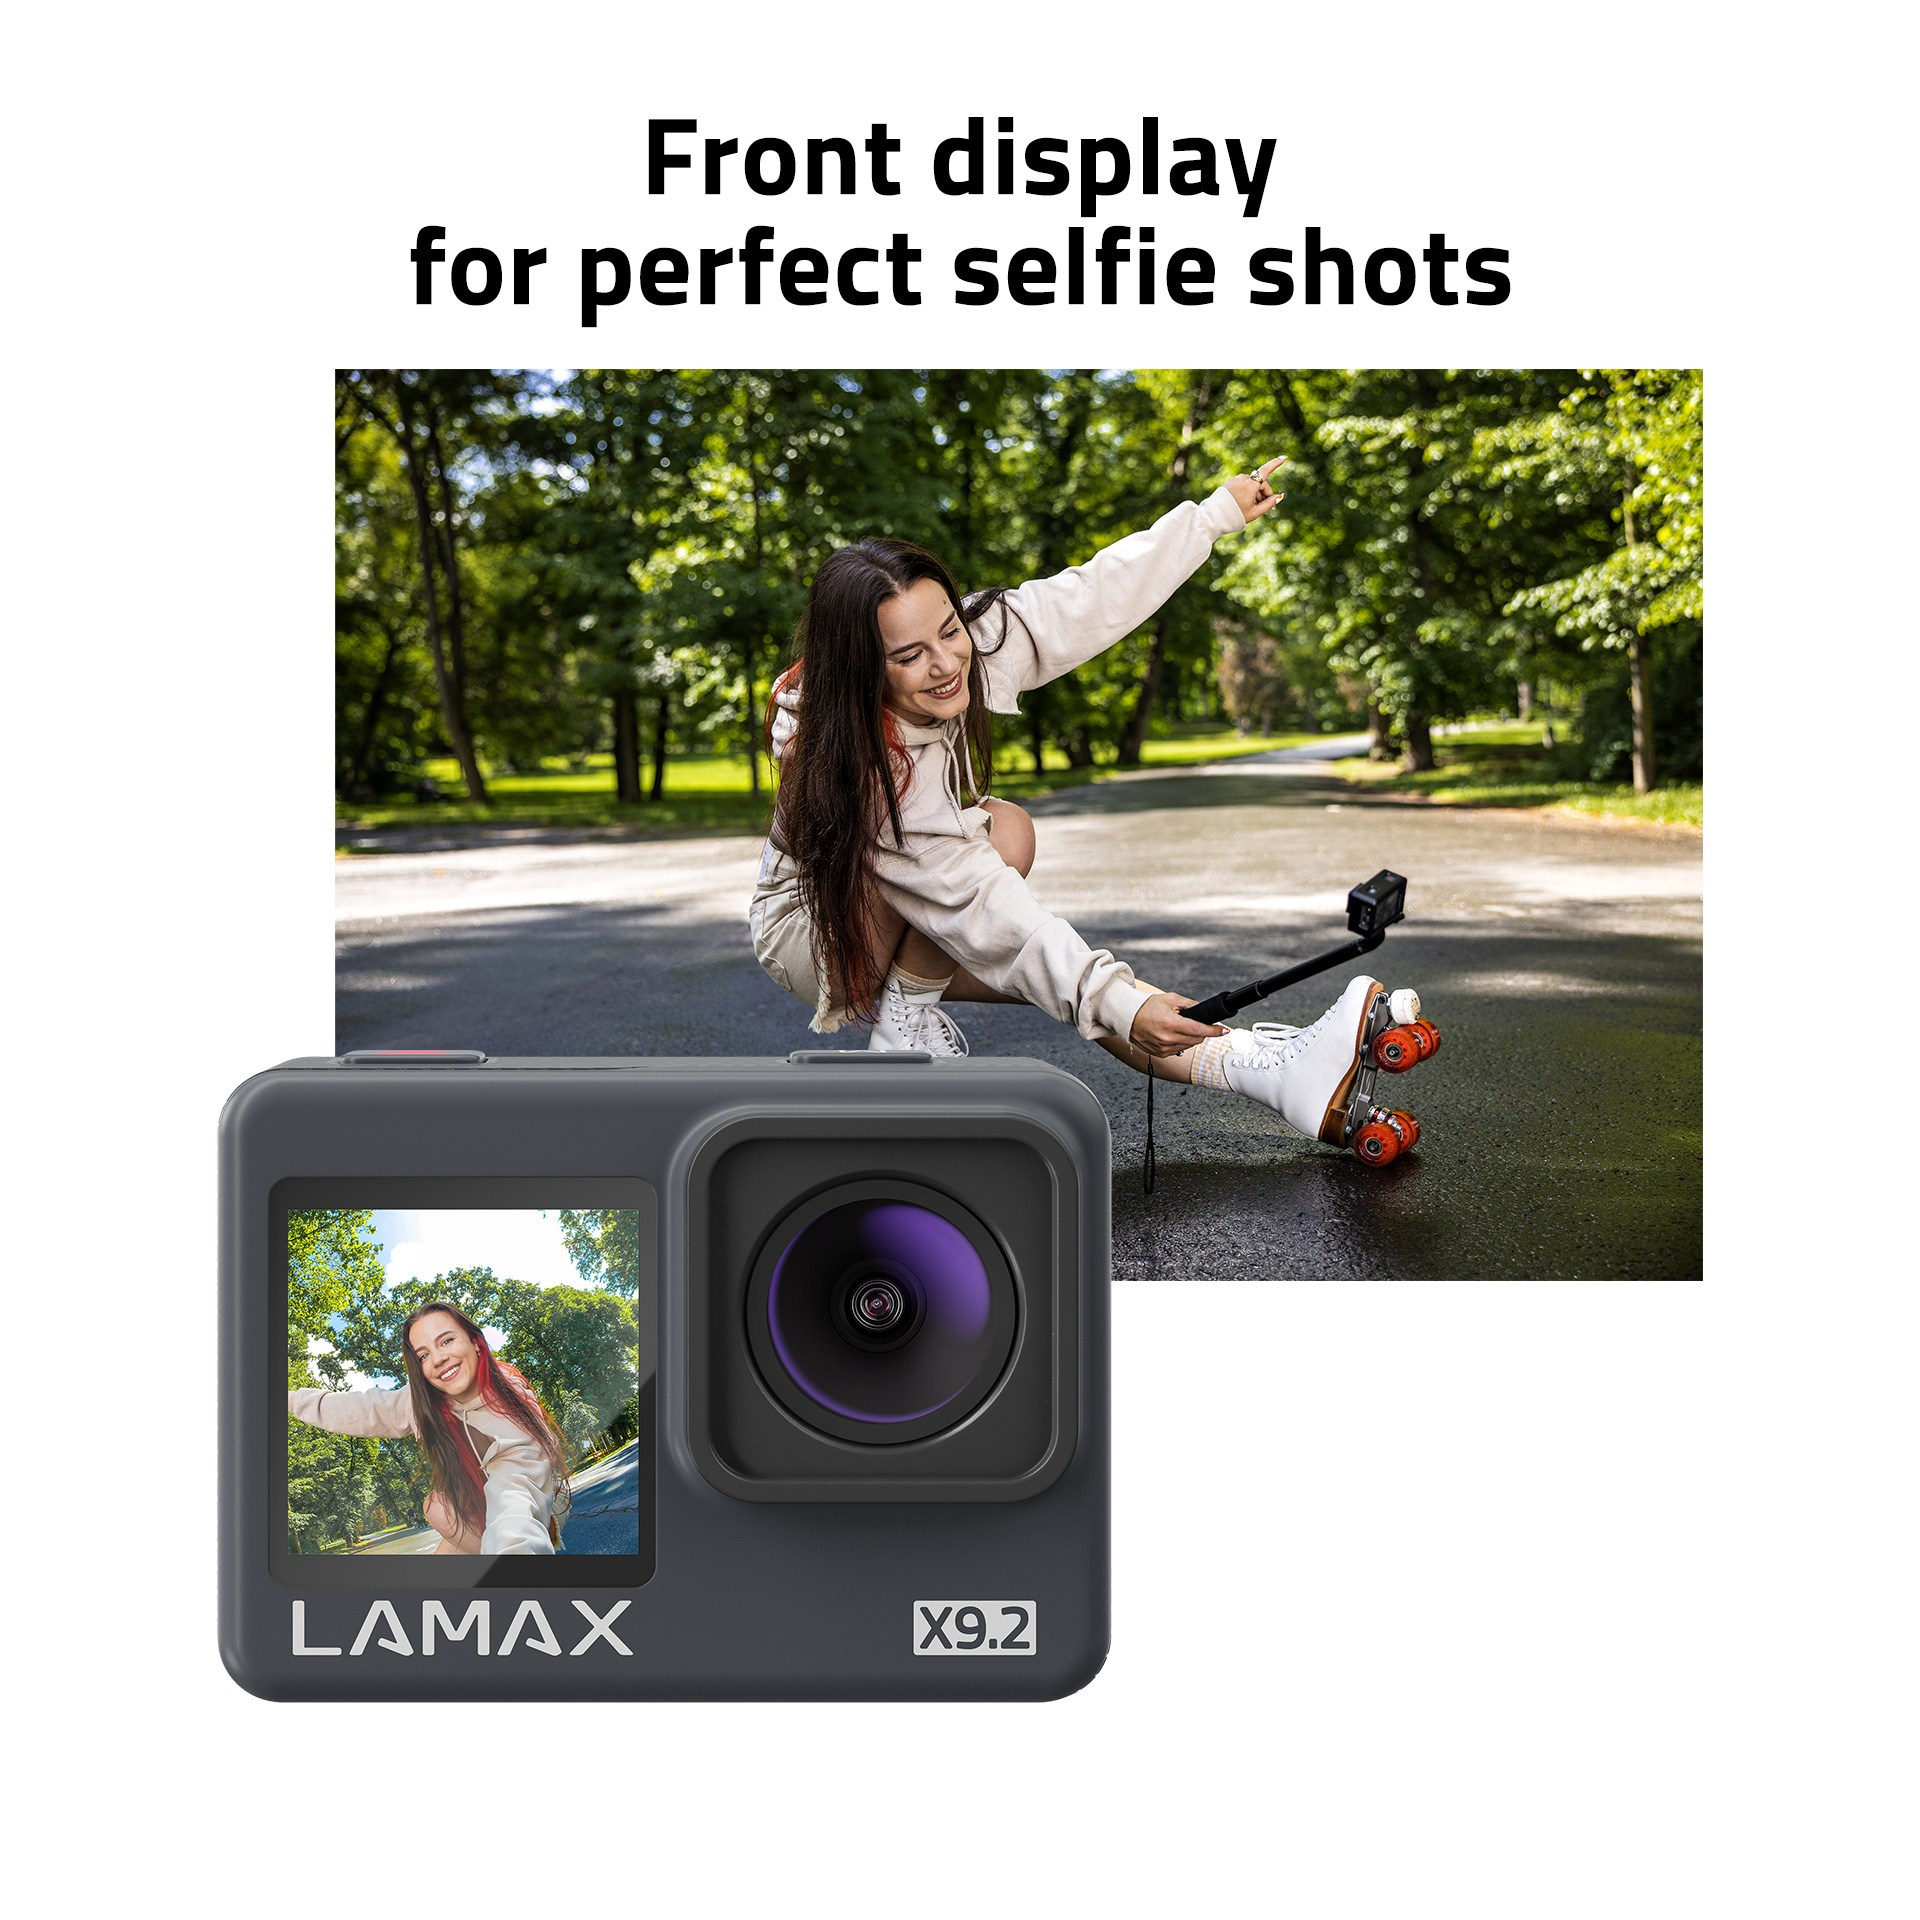 LAMAX X9.2 Action Camera